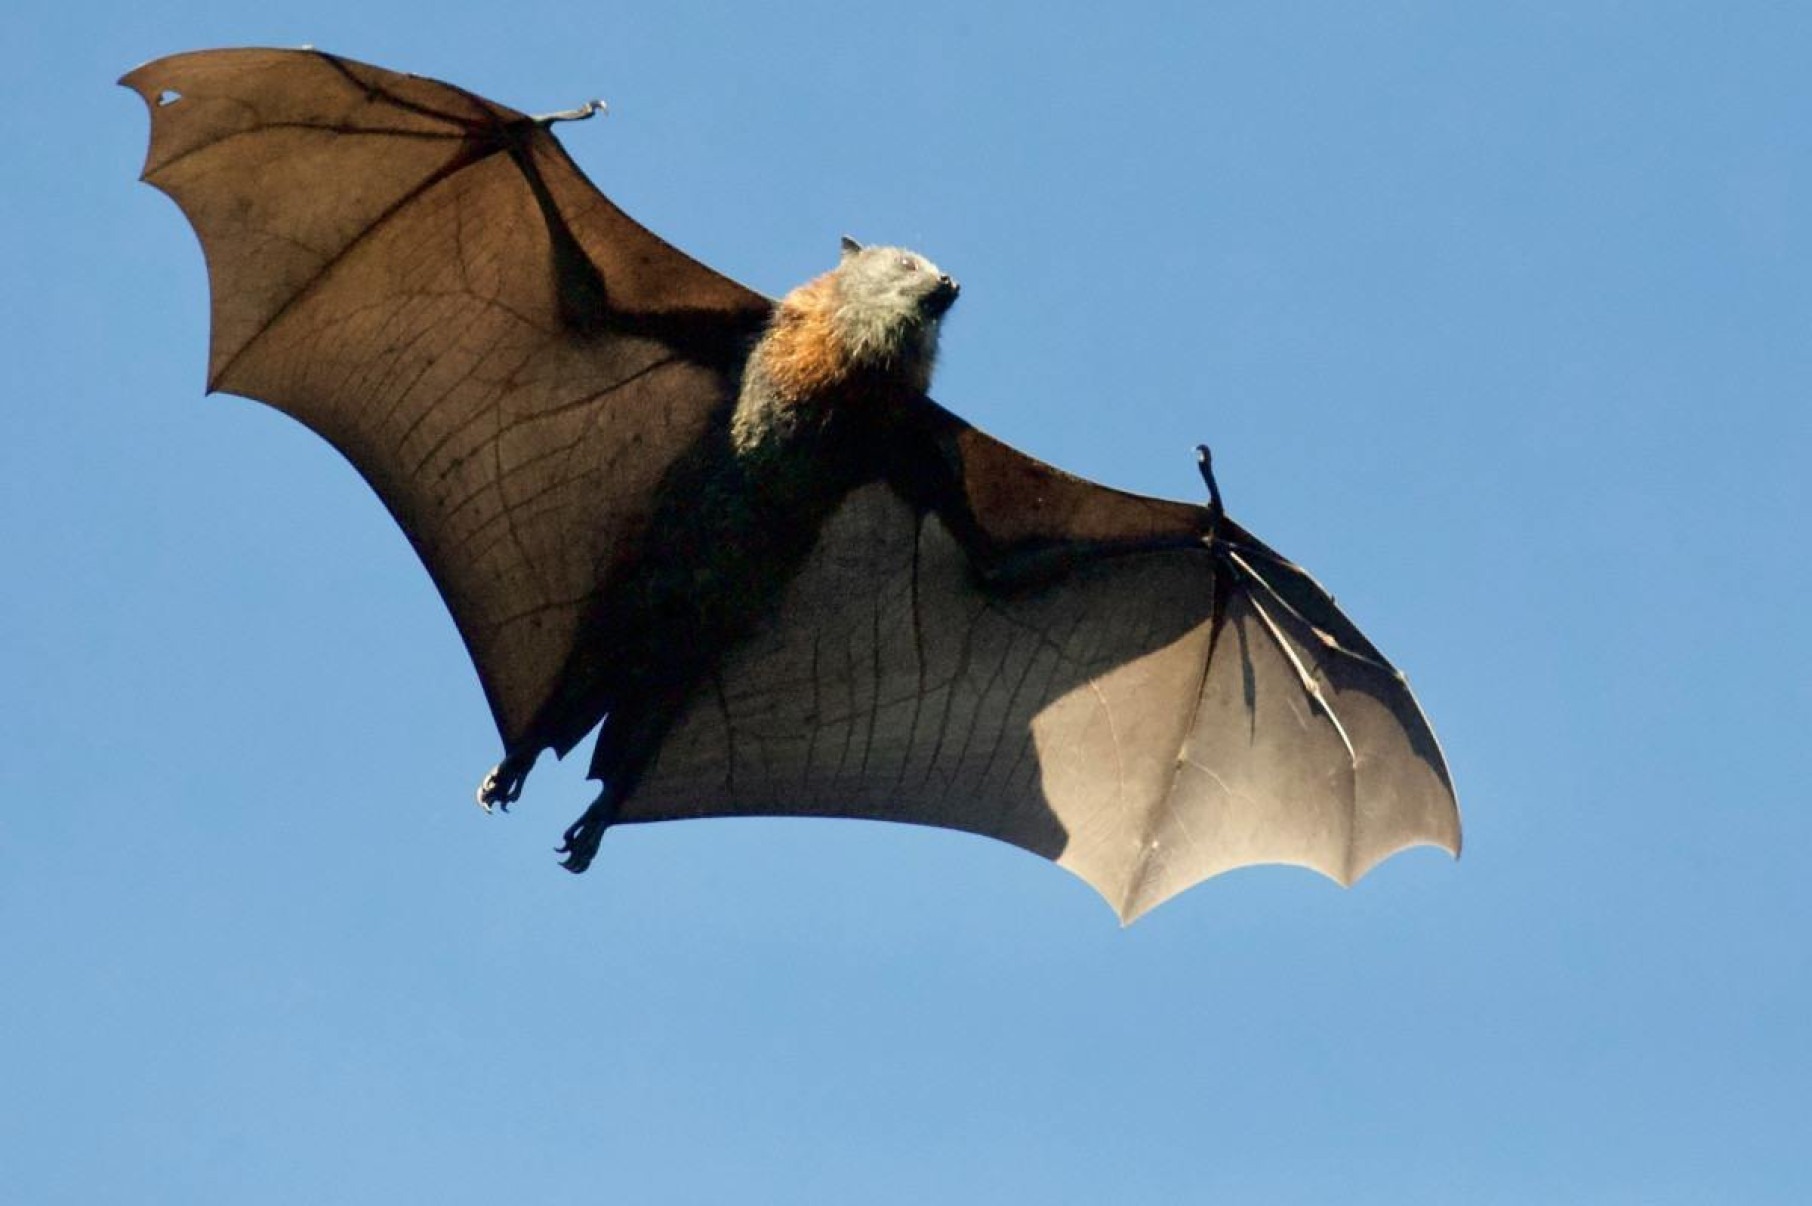 Coração de morcegos bate 900 vezes por minuto durante voo; escute